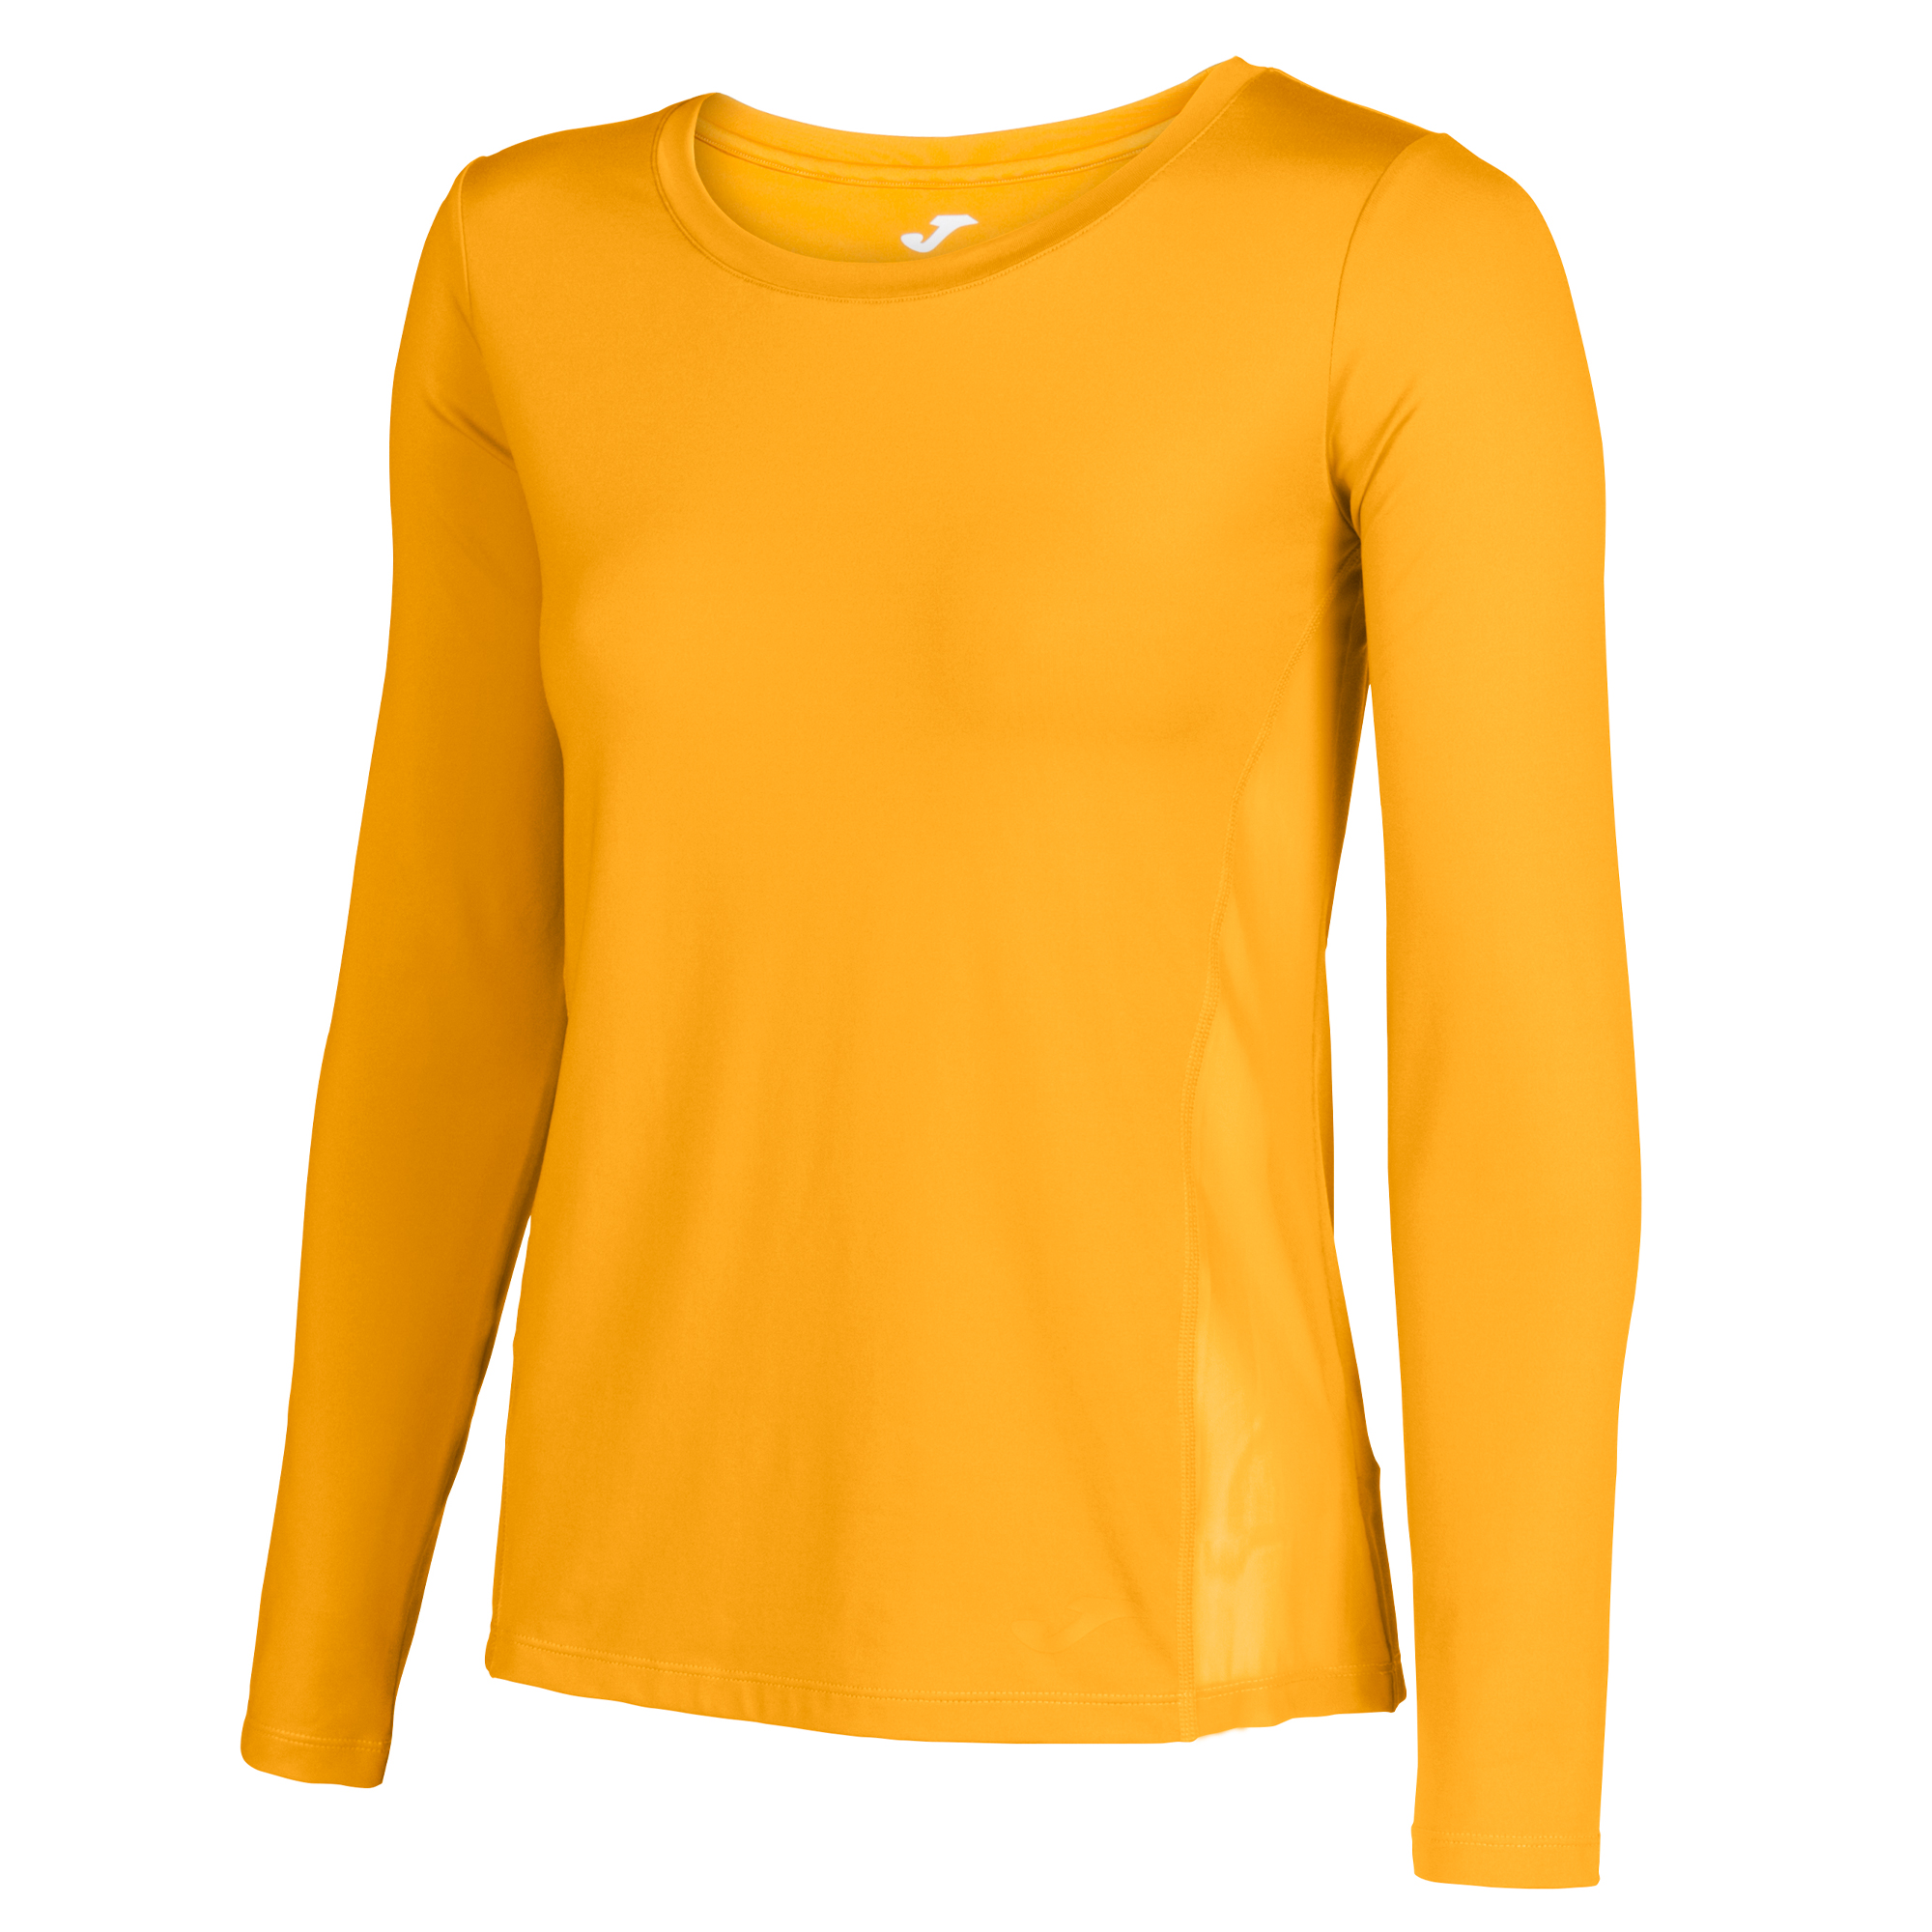 mustard yellow shirt women's